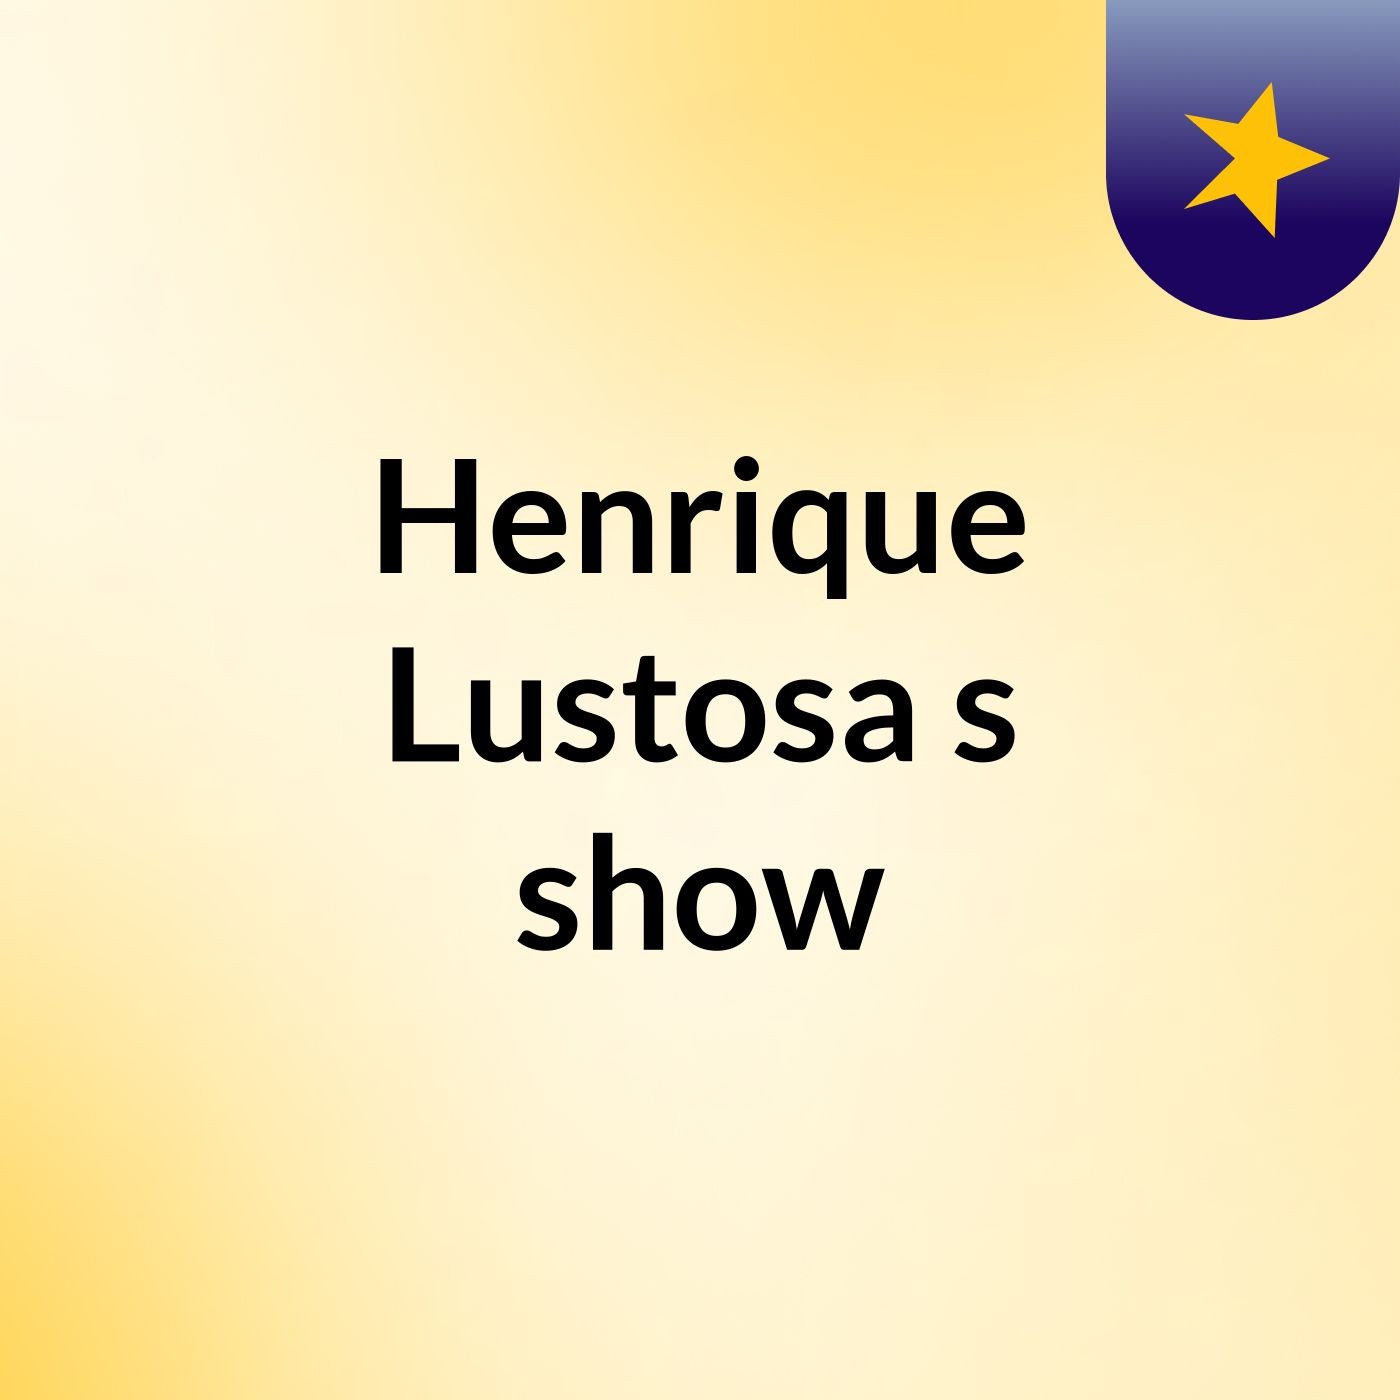 Henrique Lustosa's show